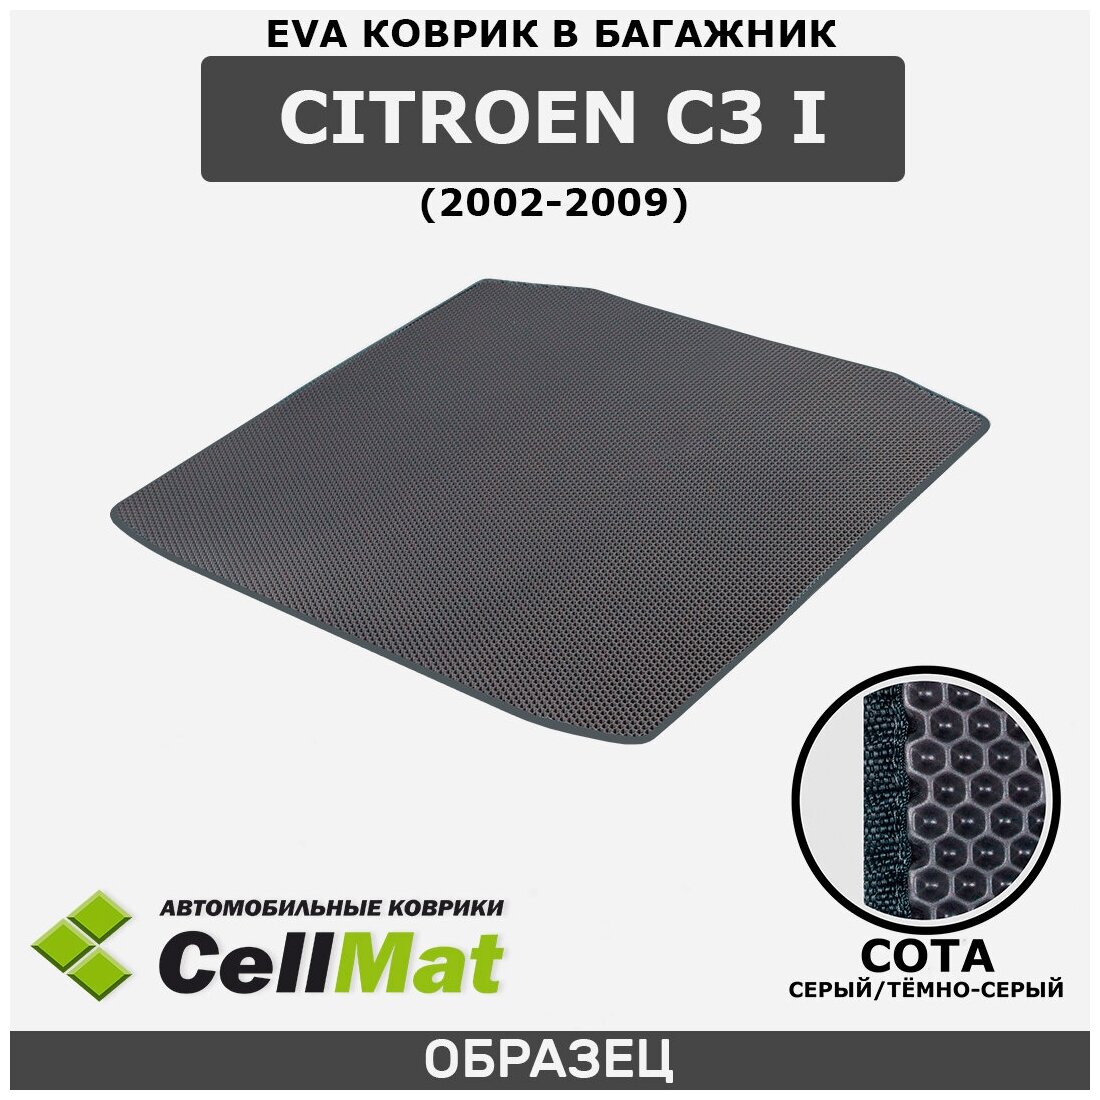 ЭВА ЕВА EVA коврик CellMAt в багажник Citroen C3 I, Ситроен C3, 1-ое поколение, 2002-2009